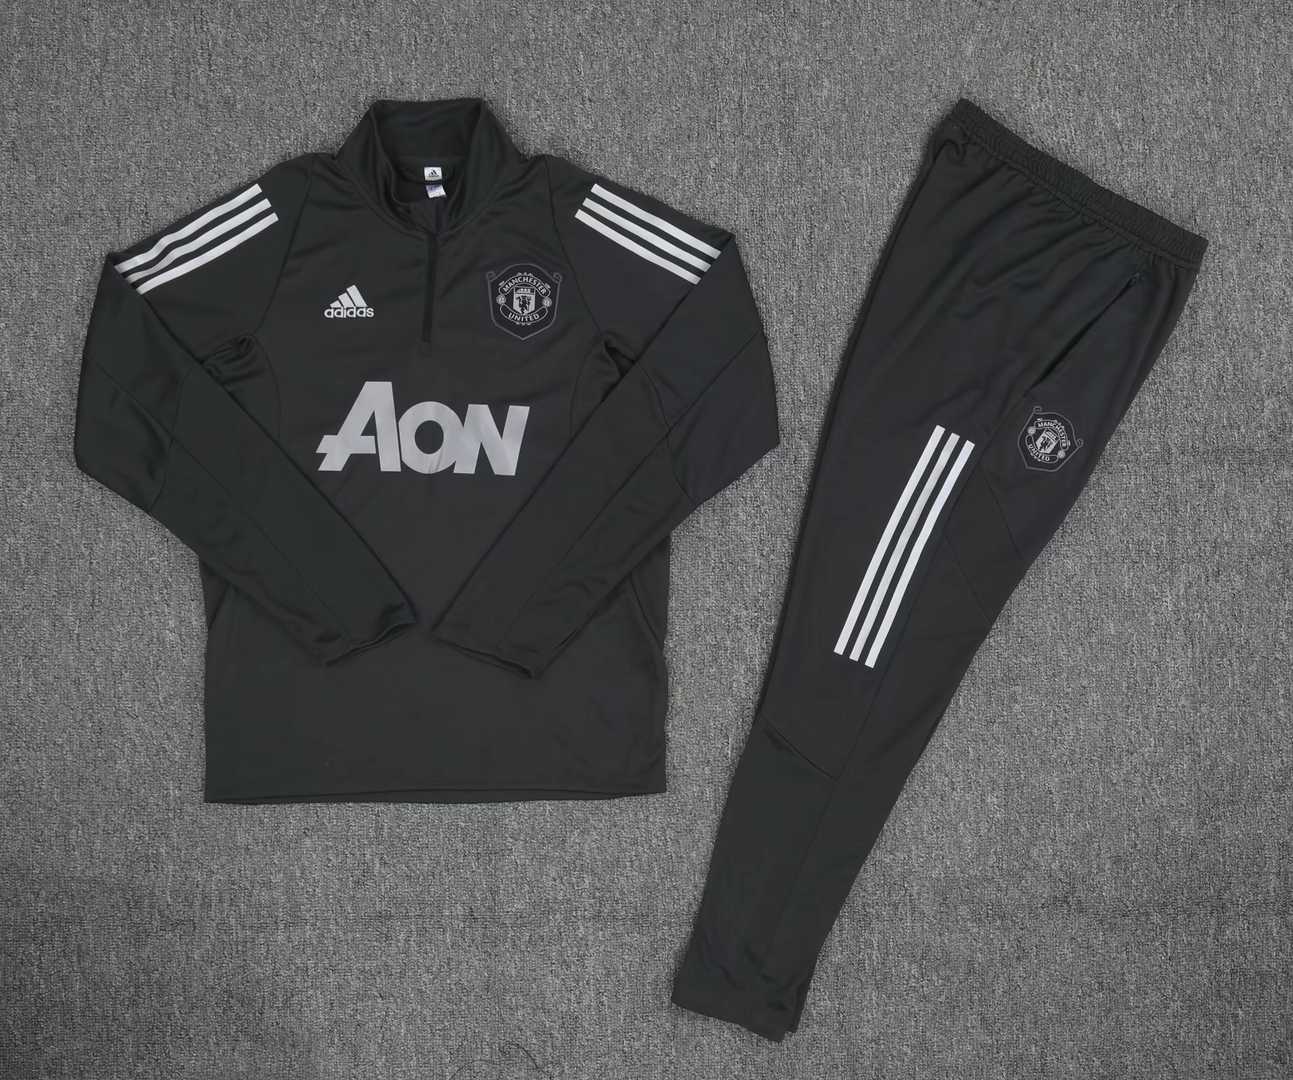 2019/20 Manchester United Half Zip Champions League Black Mens Soccer Training Suit(Jacket + Pants)